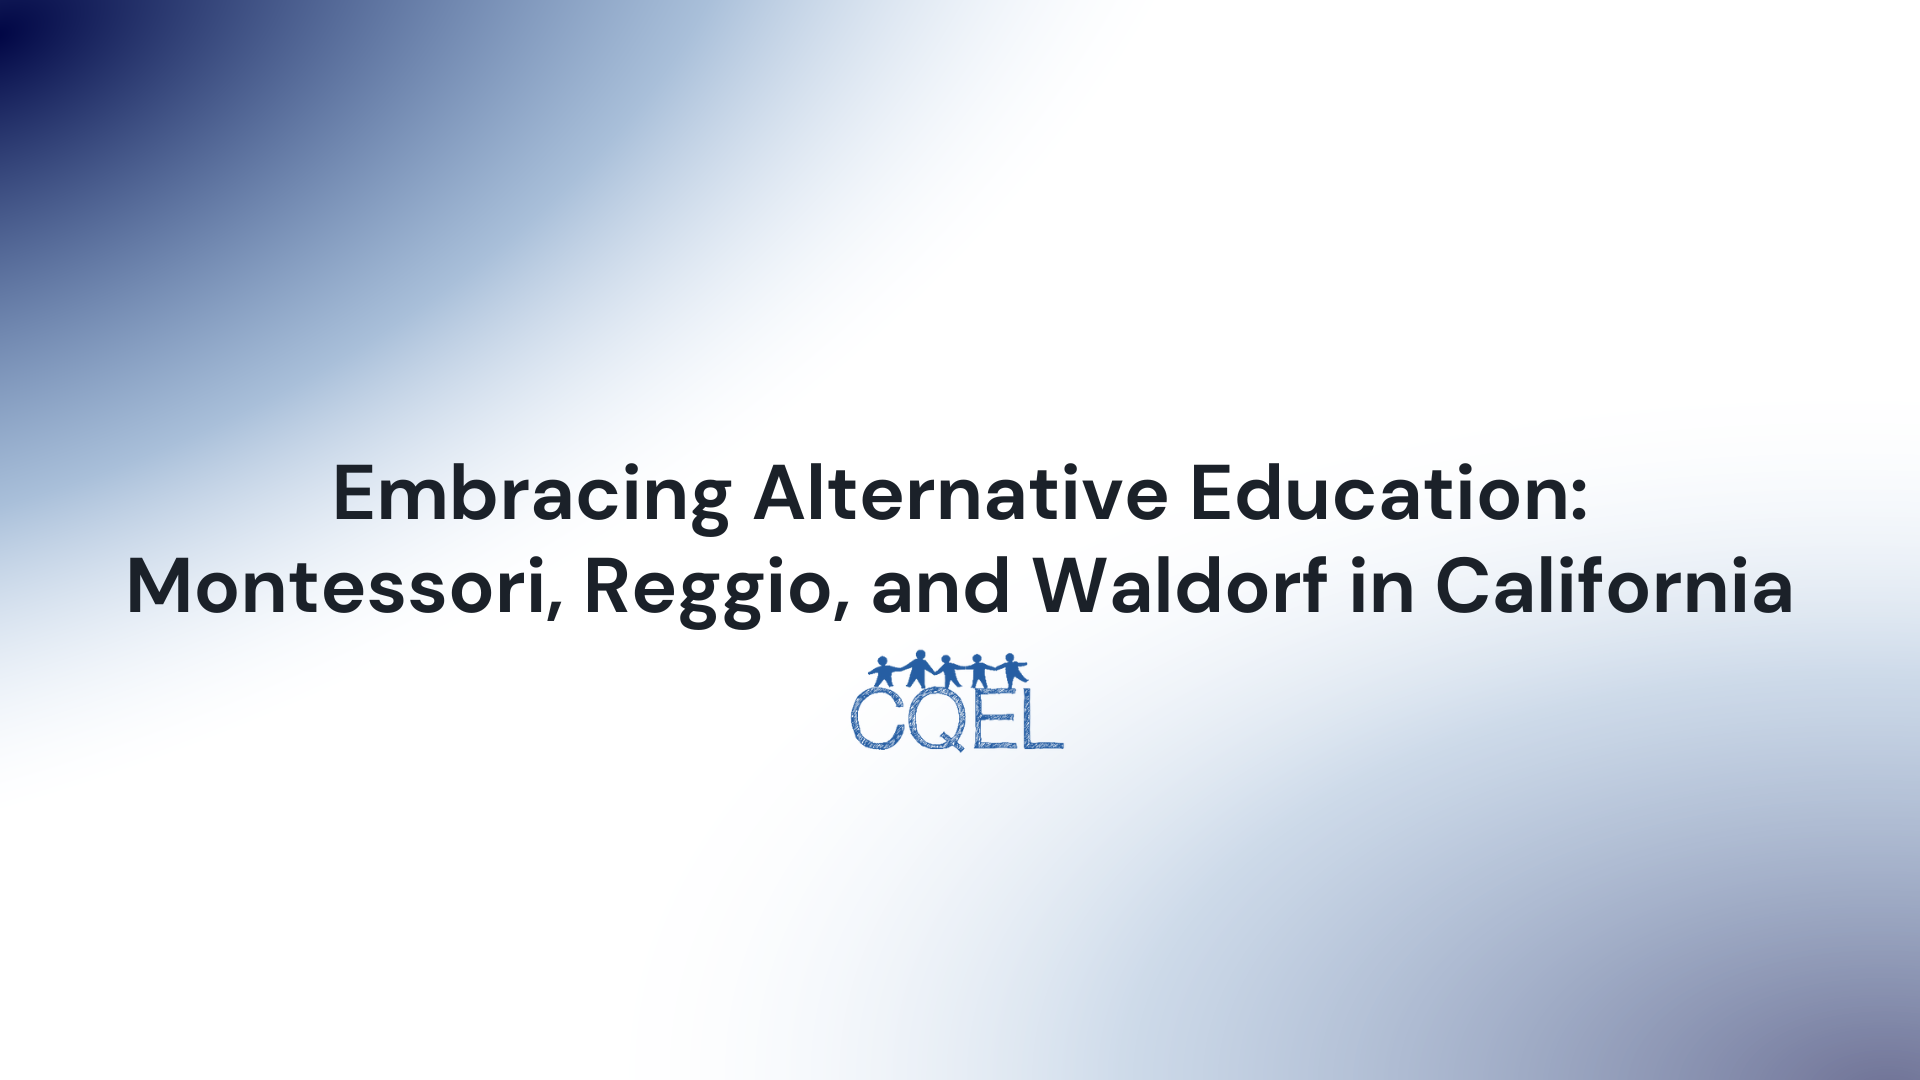 Embracing Alternative Education: Montessori, Reggio, and Waldorf in California